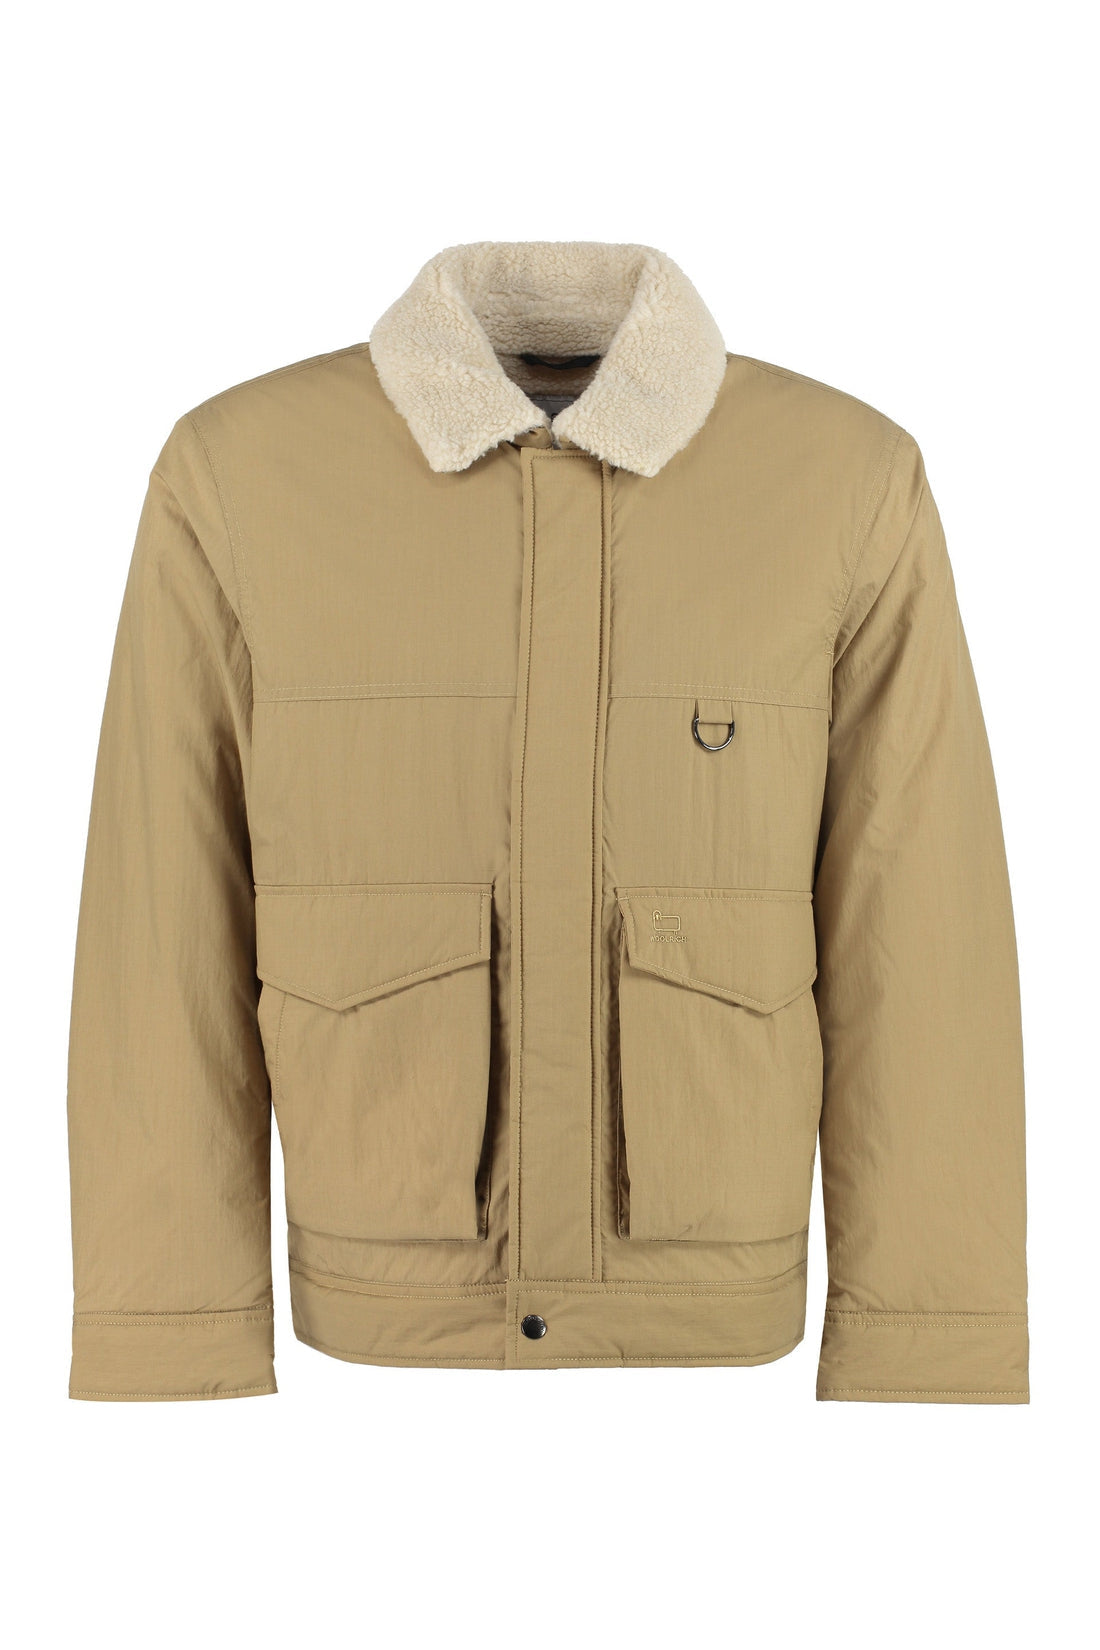 Woolrich-OUTLET-SALE-Cotton blend jacket-ARCHIVIST